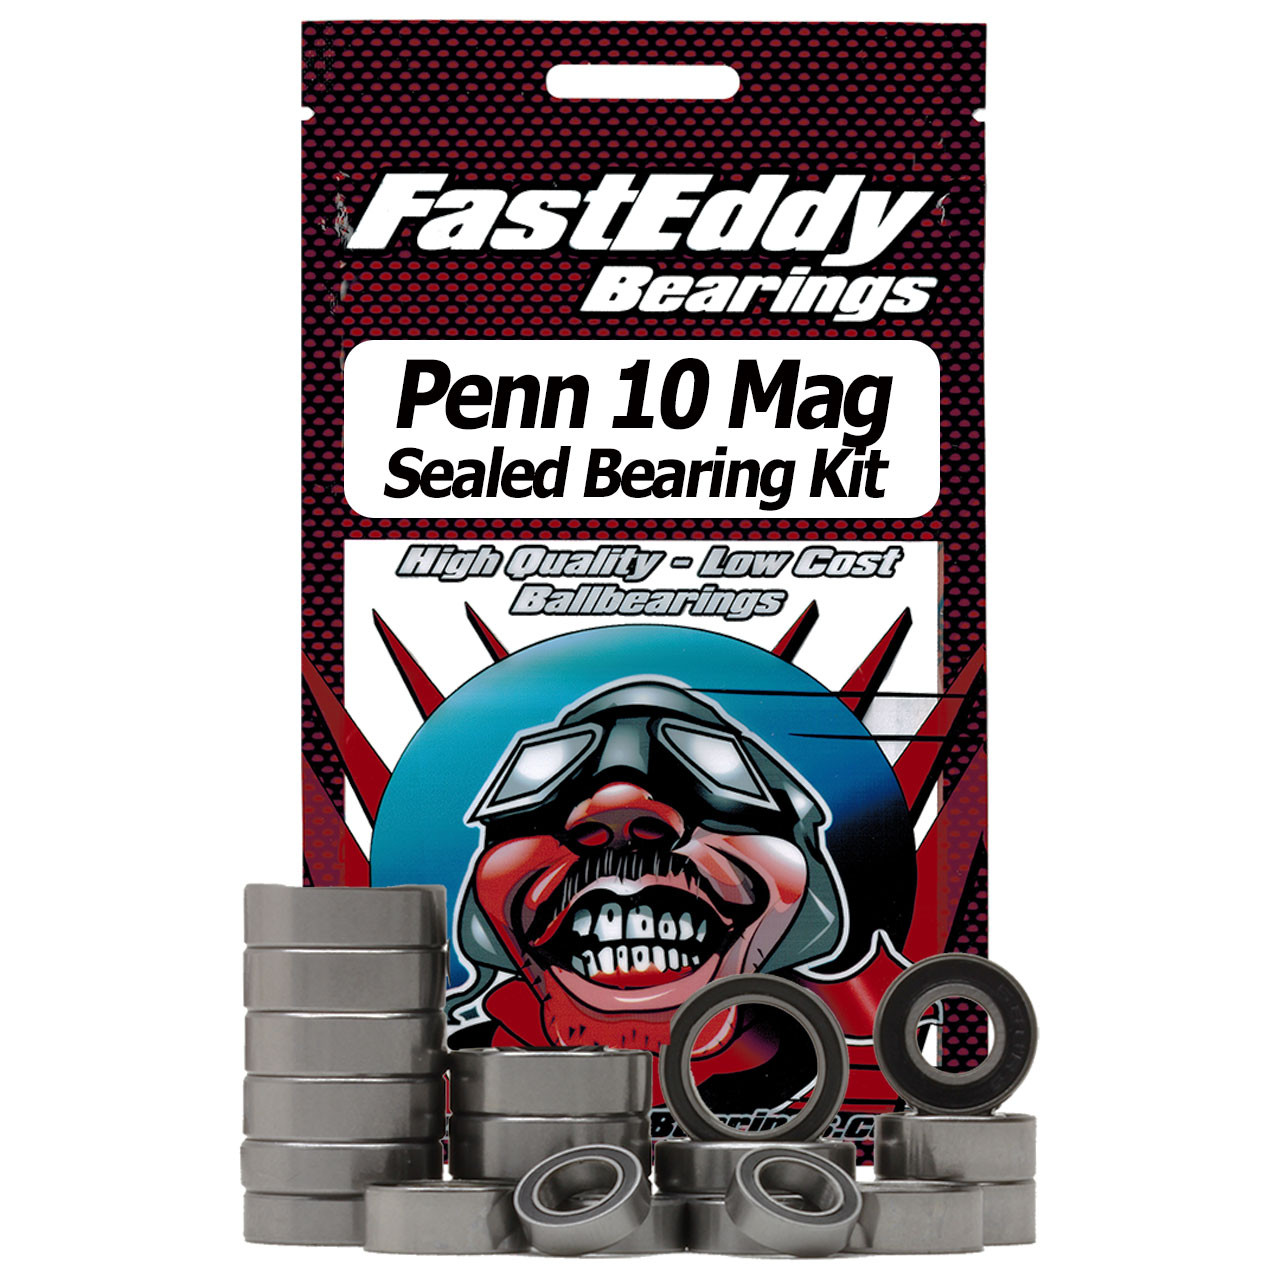 Penn 10 Mag Graphite High Speed Fishing Reel Rubber Sealed Bearing Kit